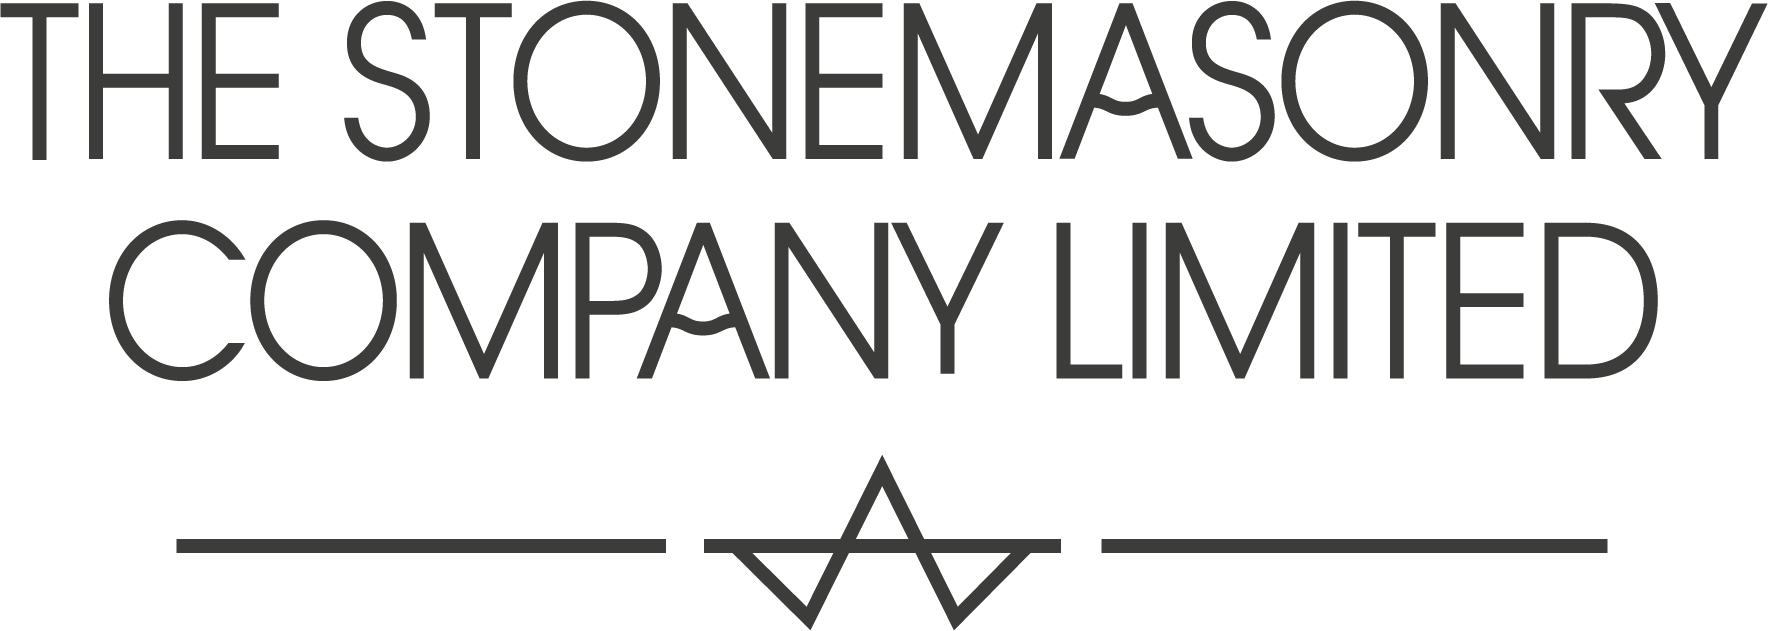 The Stonemasonry Company Ltd